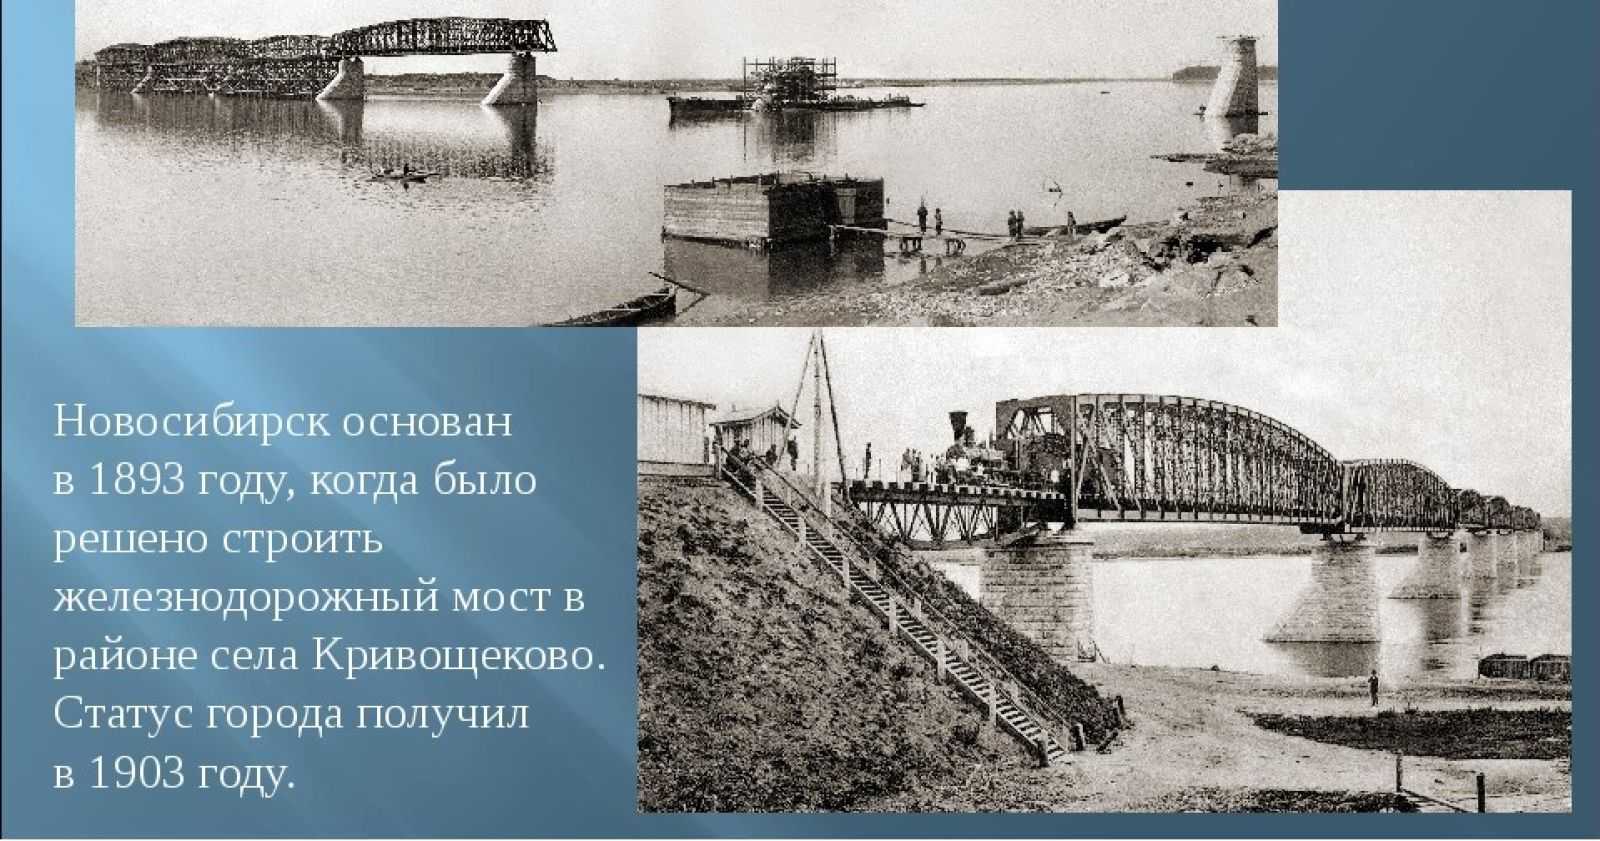 Новосибирск дата основания. Новониколаевск 1893. Новосибирск 19 век. Новониколаевск Кривощеково. Новосибирск в 1893 году.